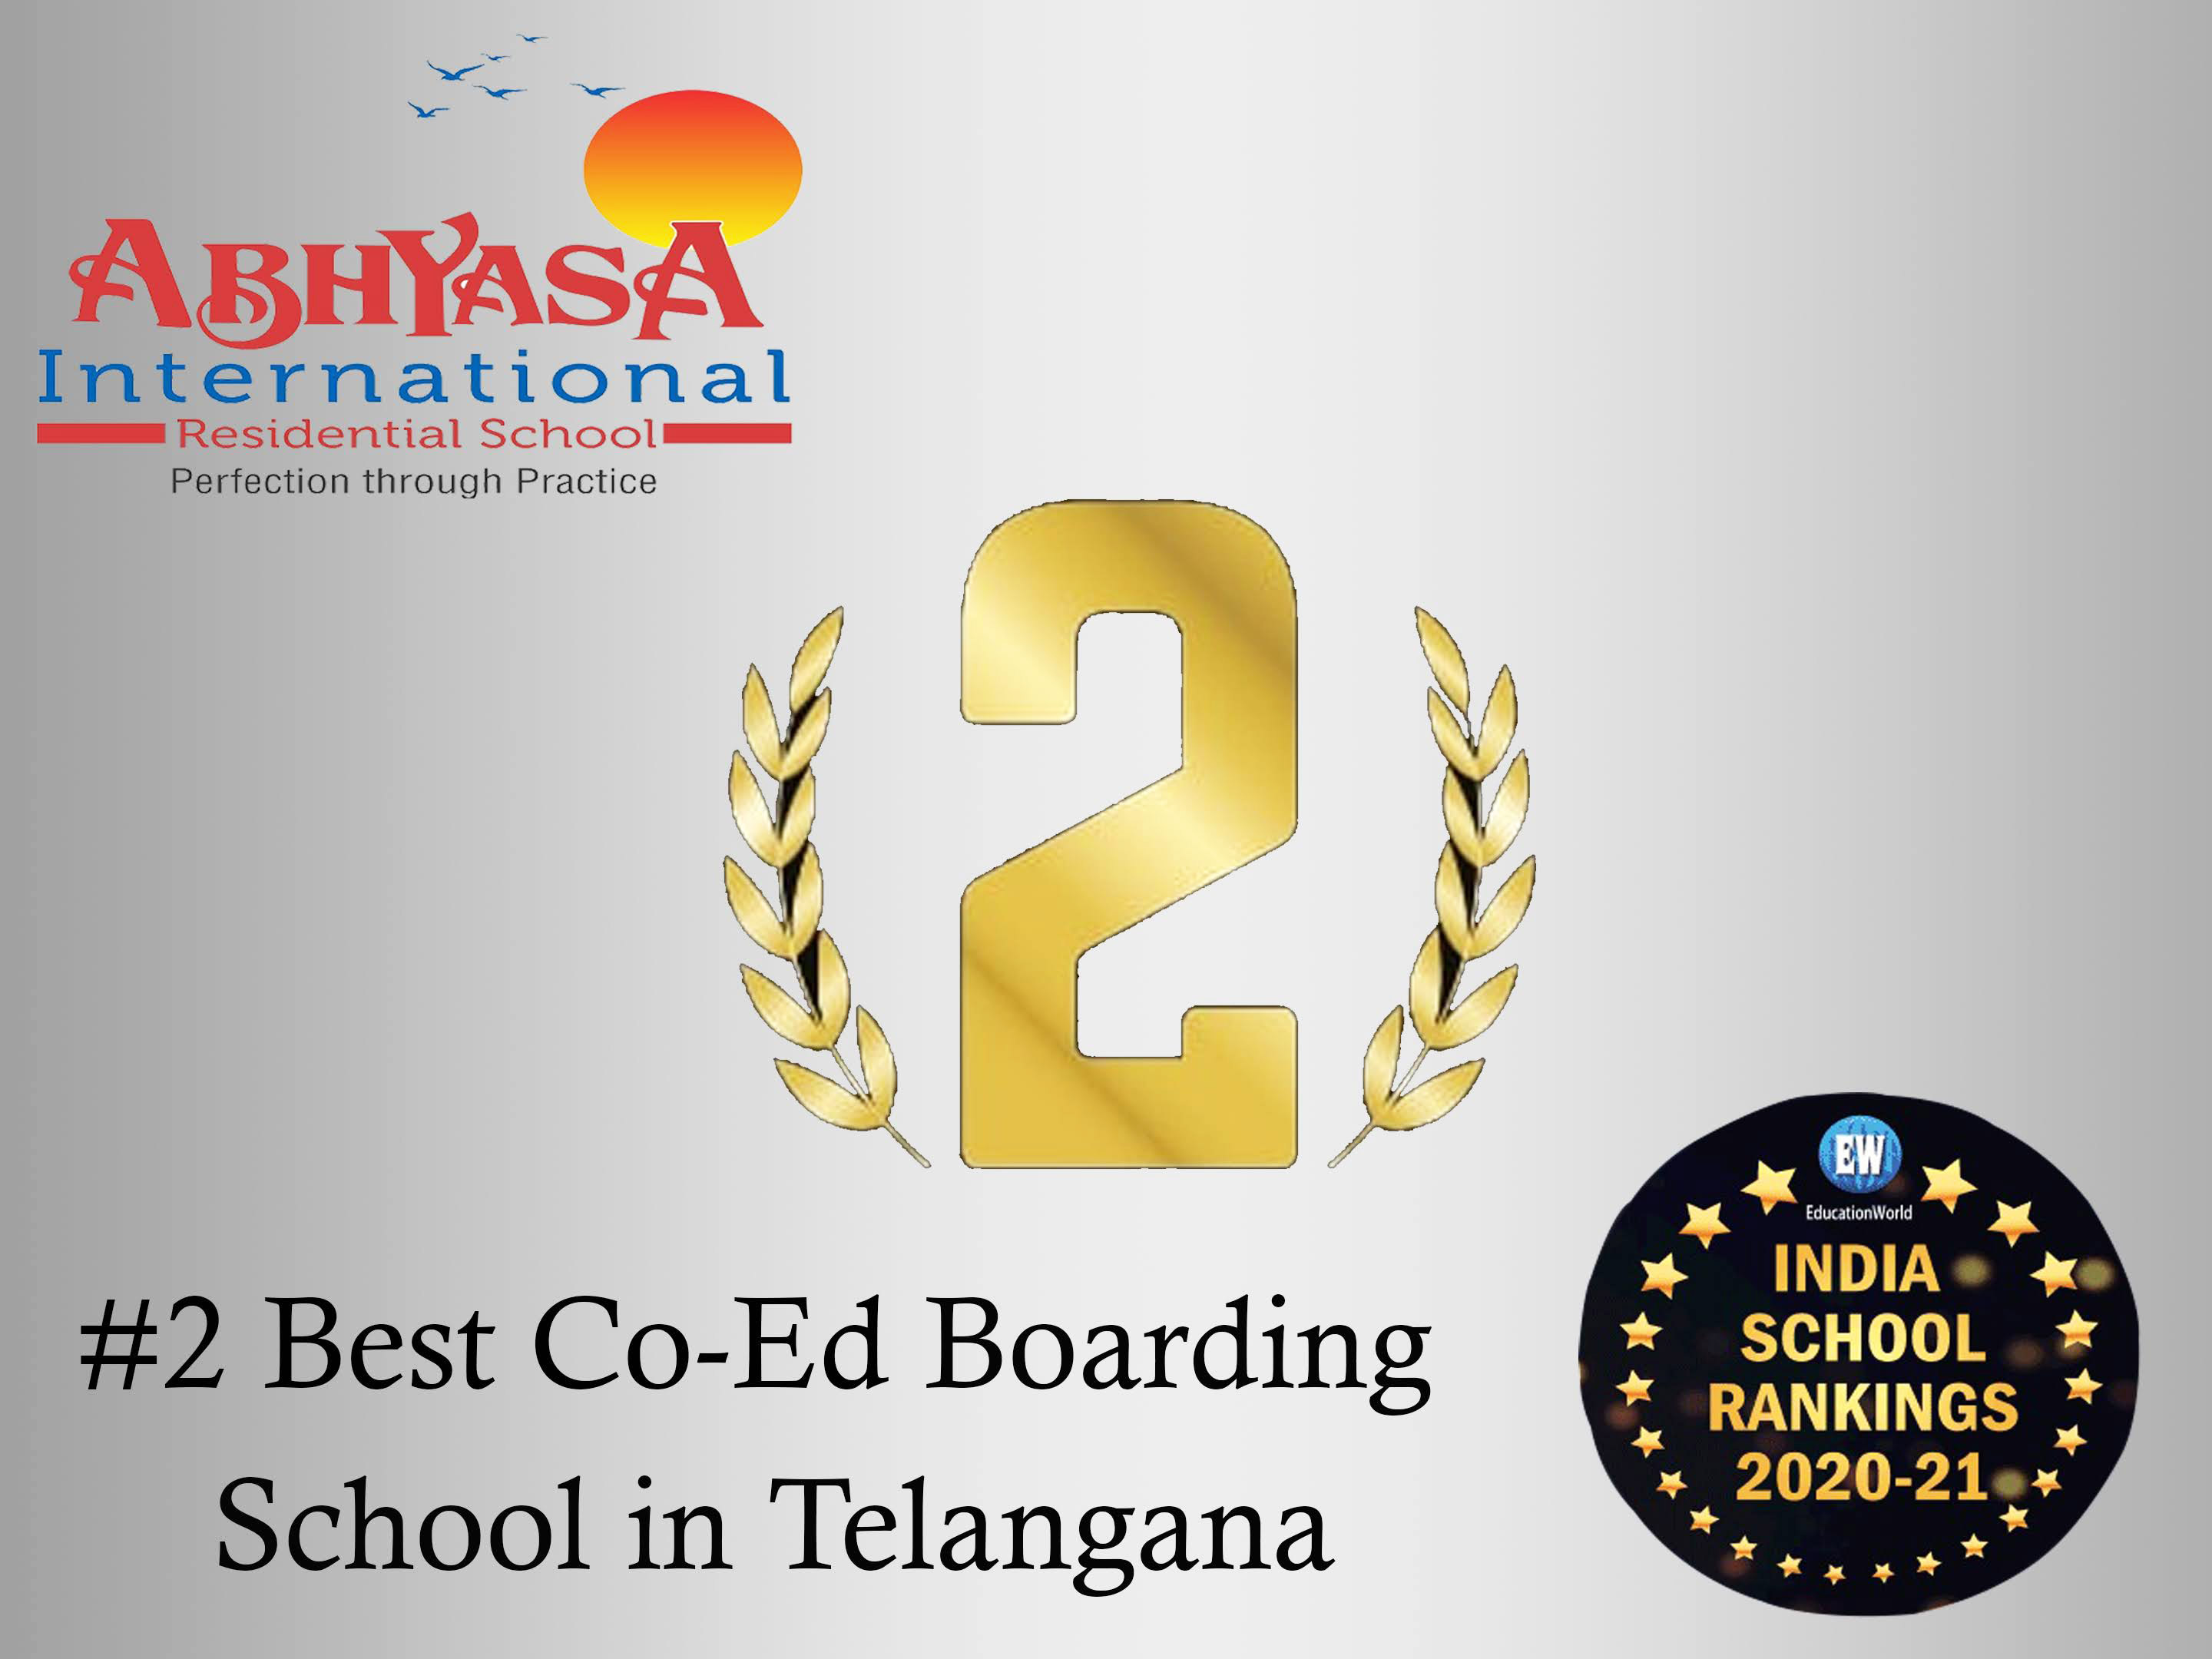 Indian School Ranking Award 2020-2021.